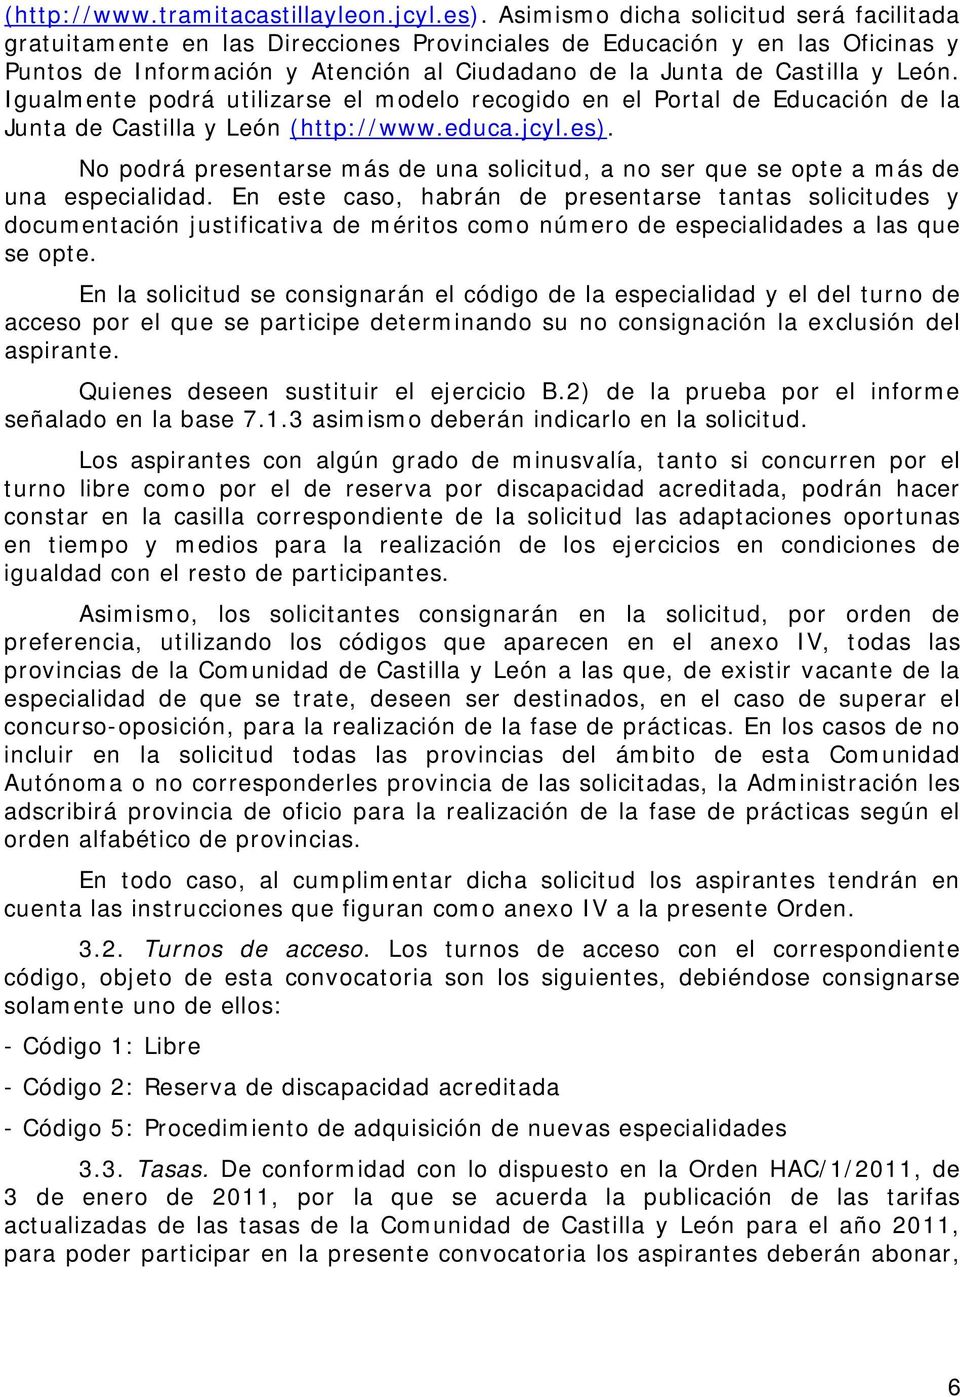 Igualmente podrá utilizarse el modelo recogido en el Portal de Educación de la Junta de Castilla y León (http://www.educa.jcyl.es).